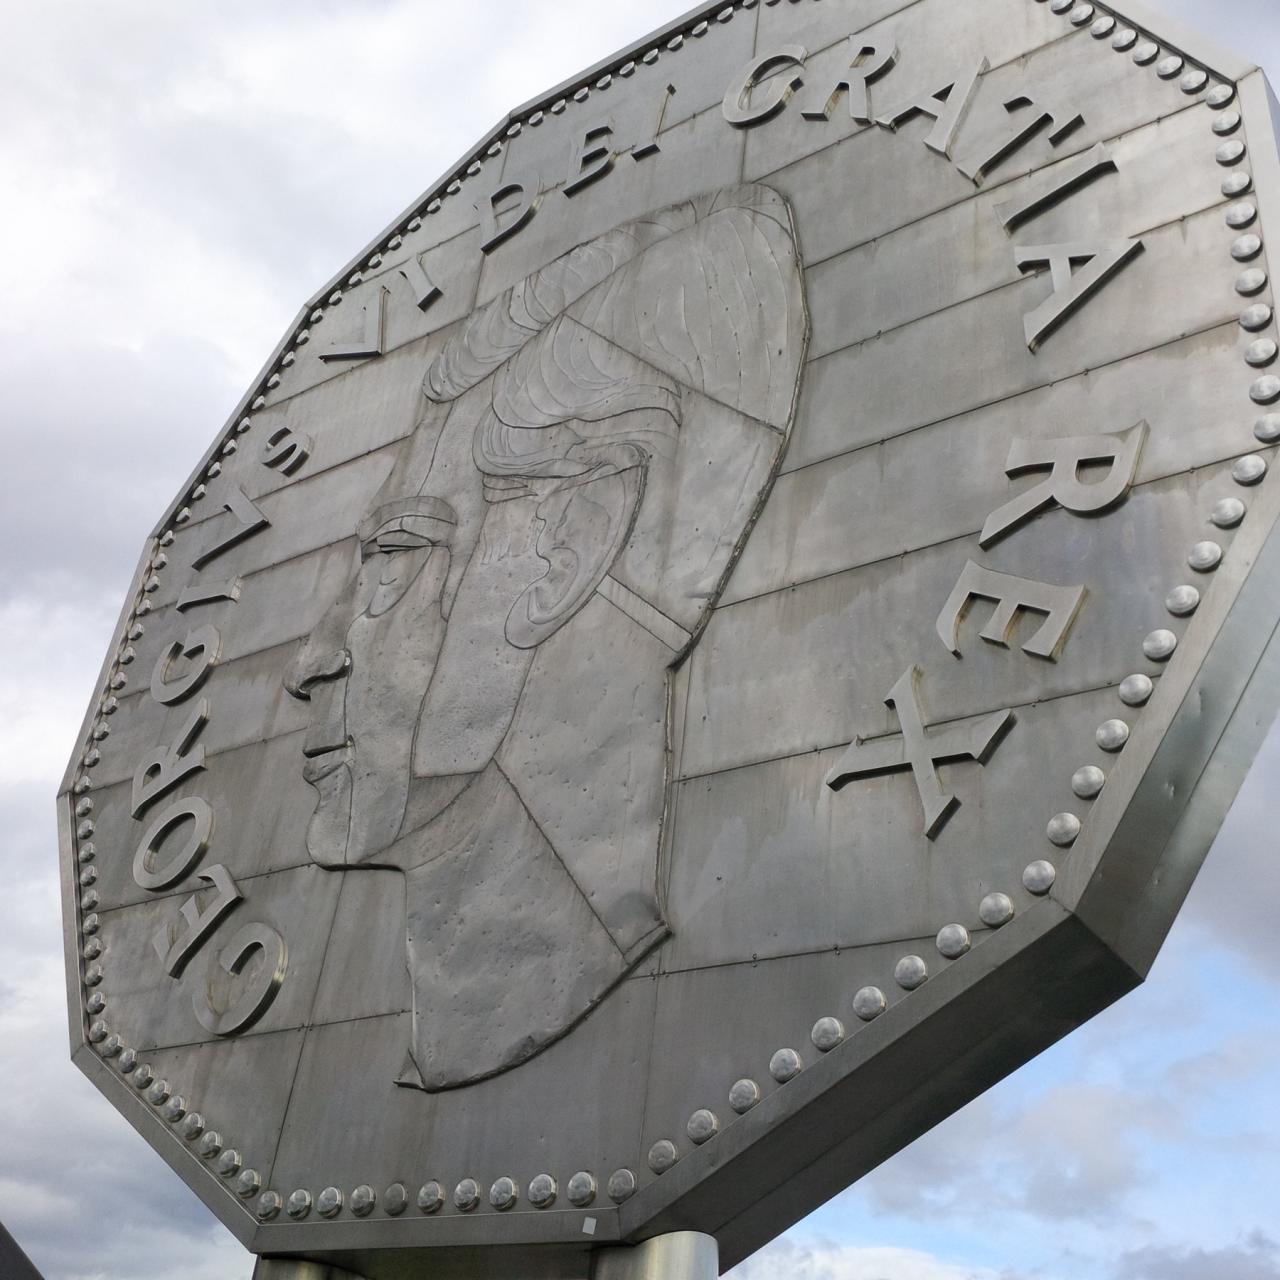 Picture showing the Big Nickel in Sudbury, Ontario